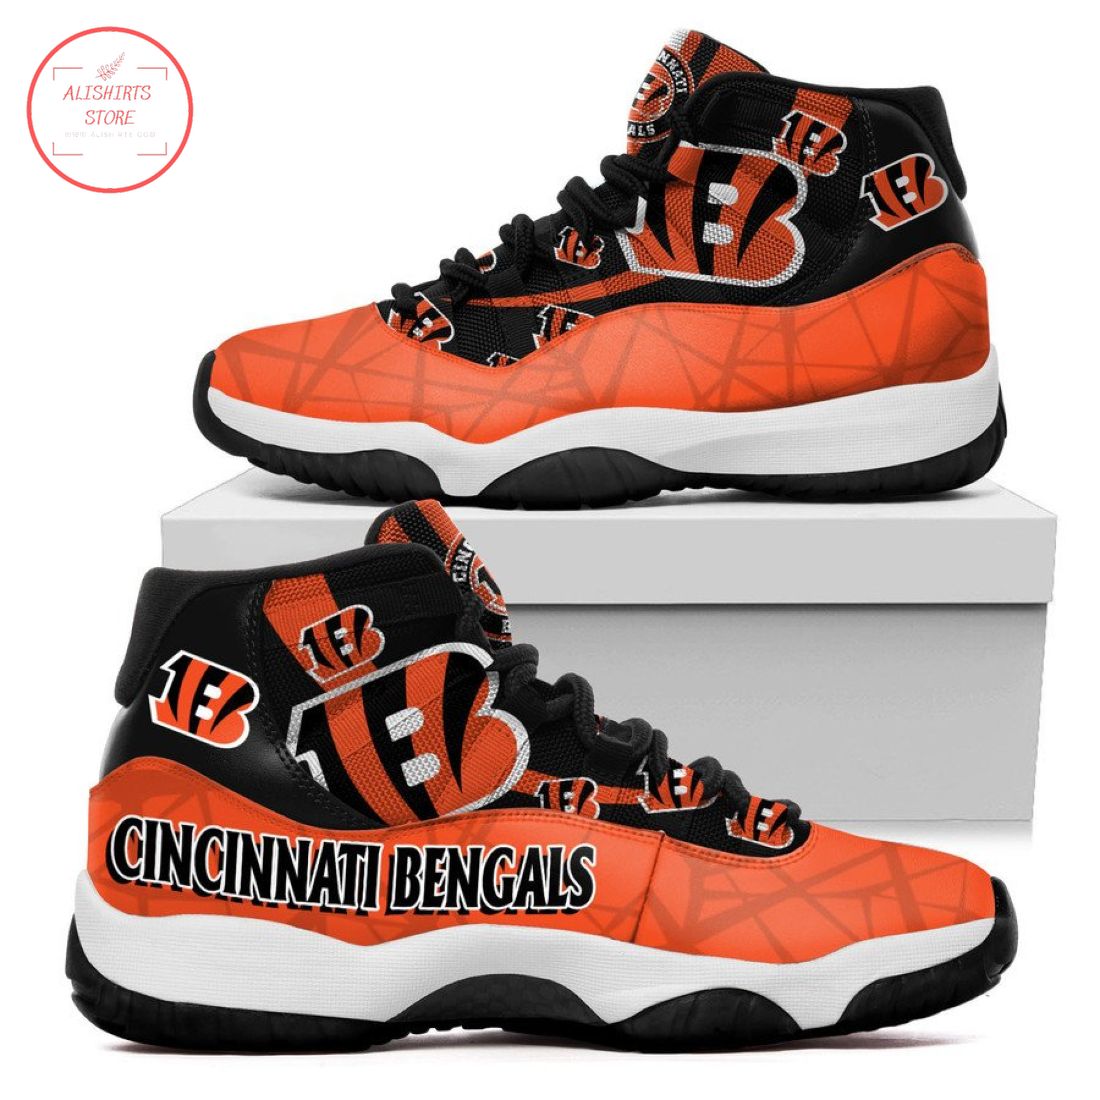 Cincinnati Bengals NFL New Air Jordan 11 Sneakers Shoes